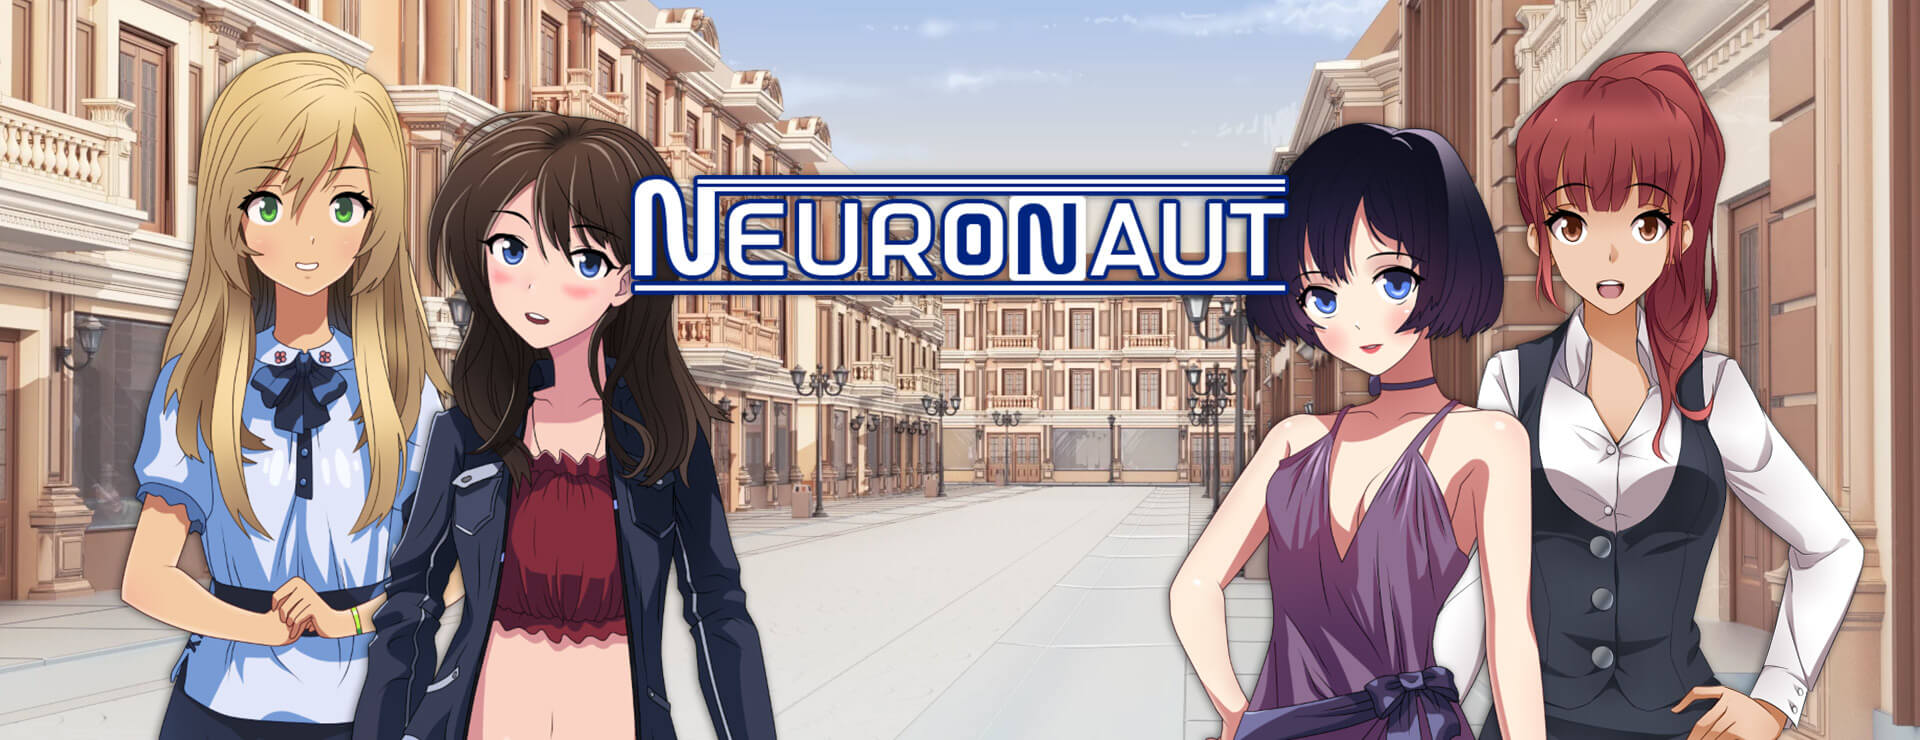 Neuronaut - Aventura Acción Juego